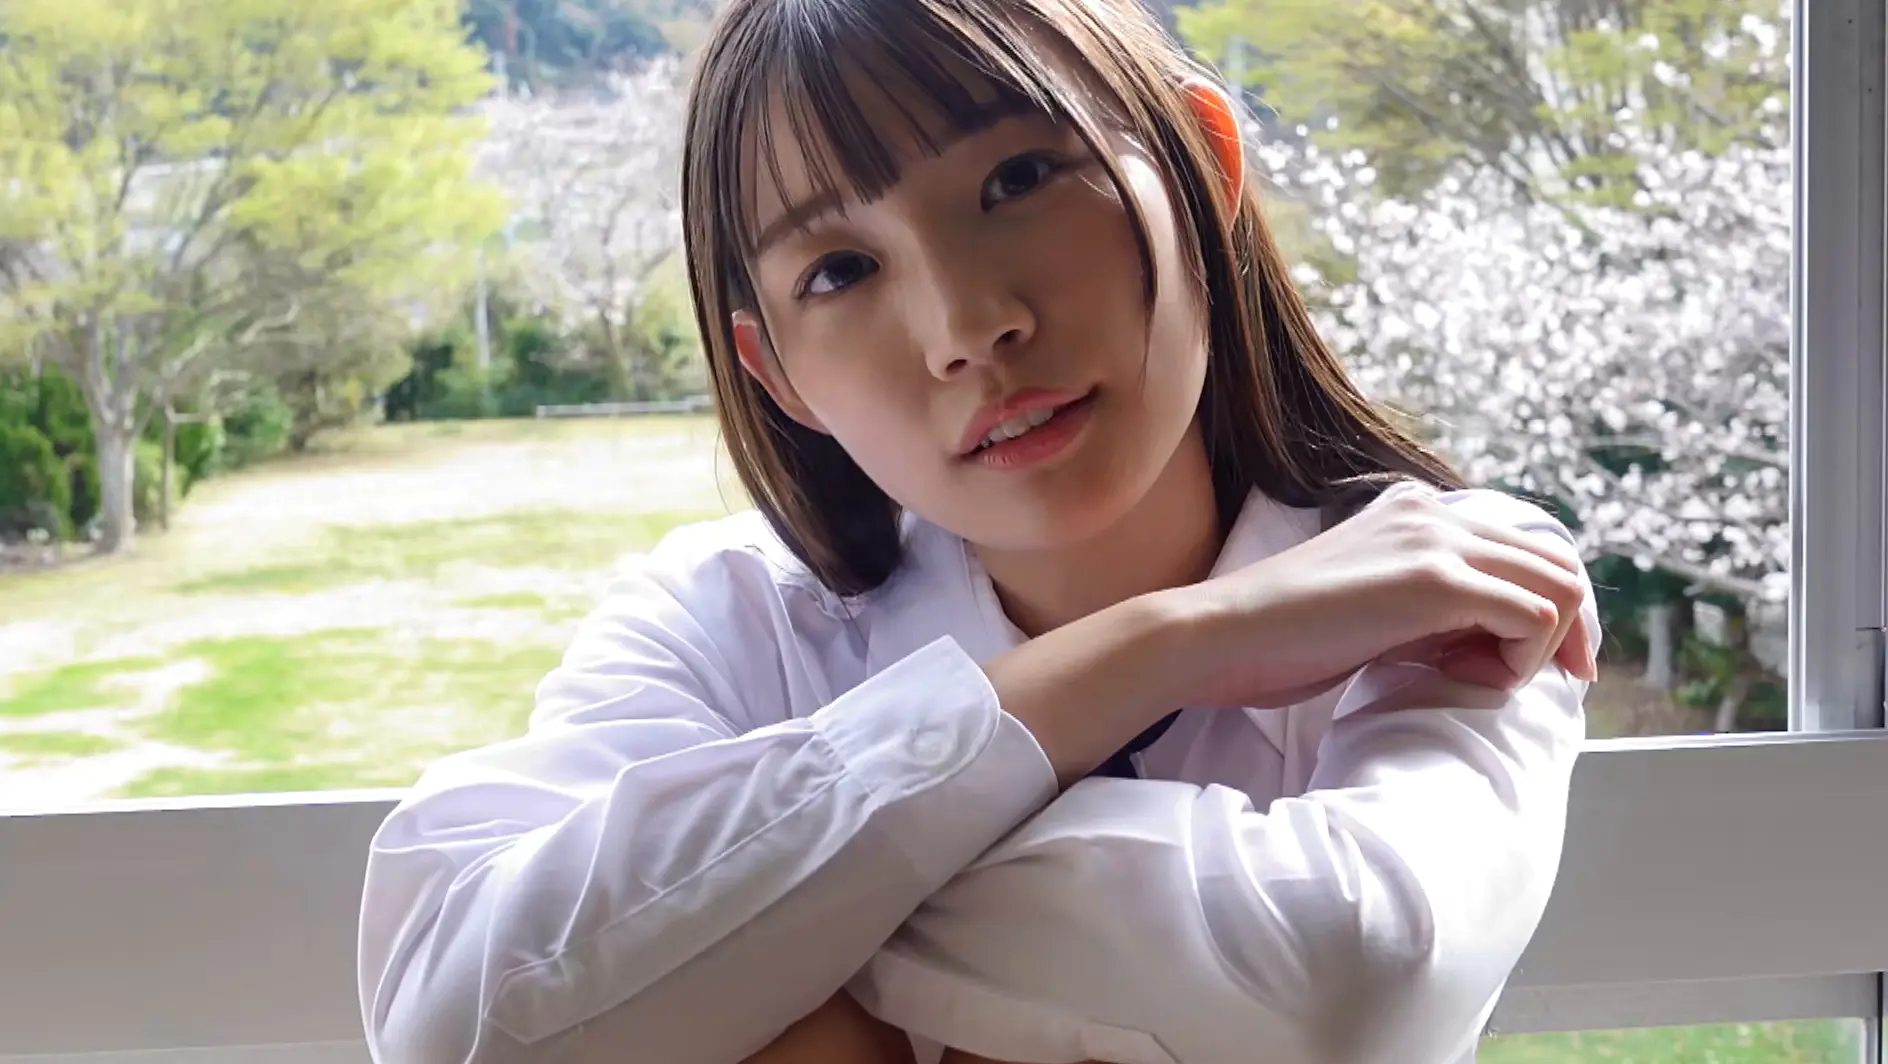 『あゆの初恋 波崎天結』笑顔がかわいいスレンダー美少女のエッチなボディがたまらないグラビア動画